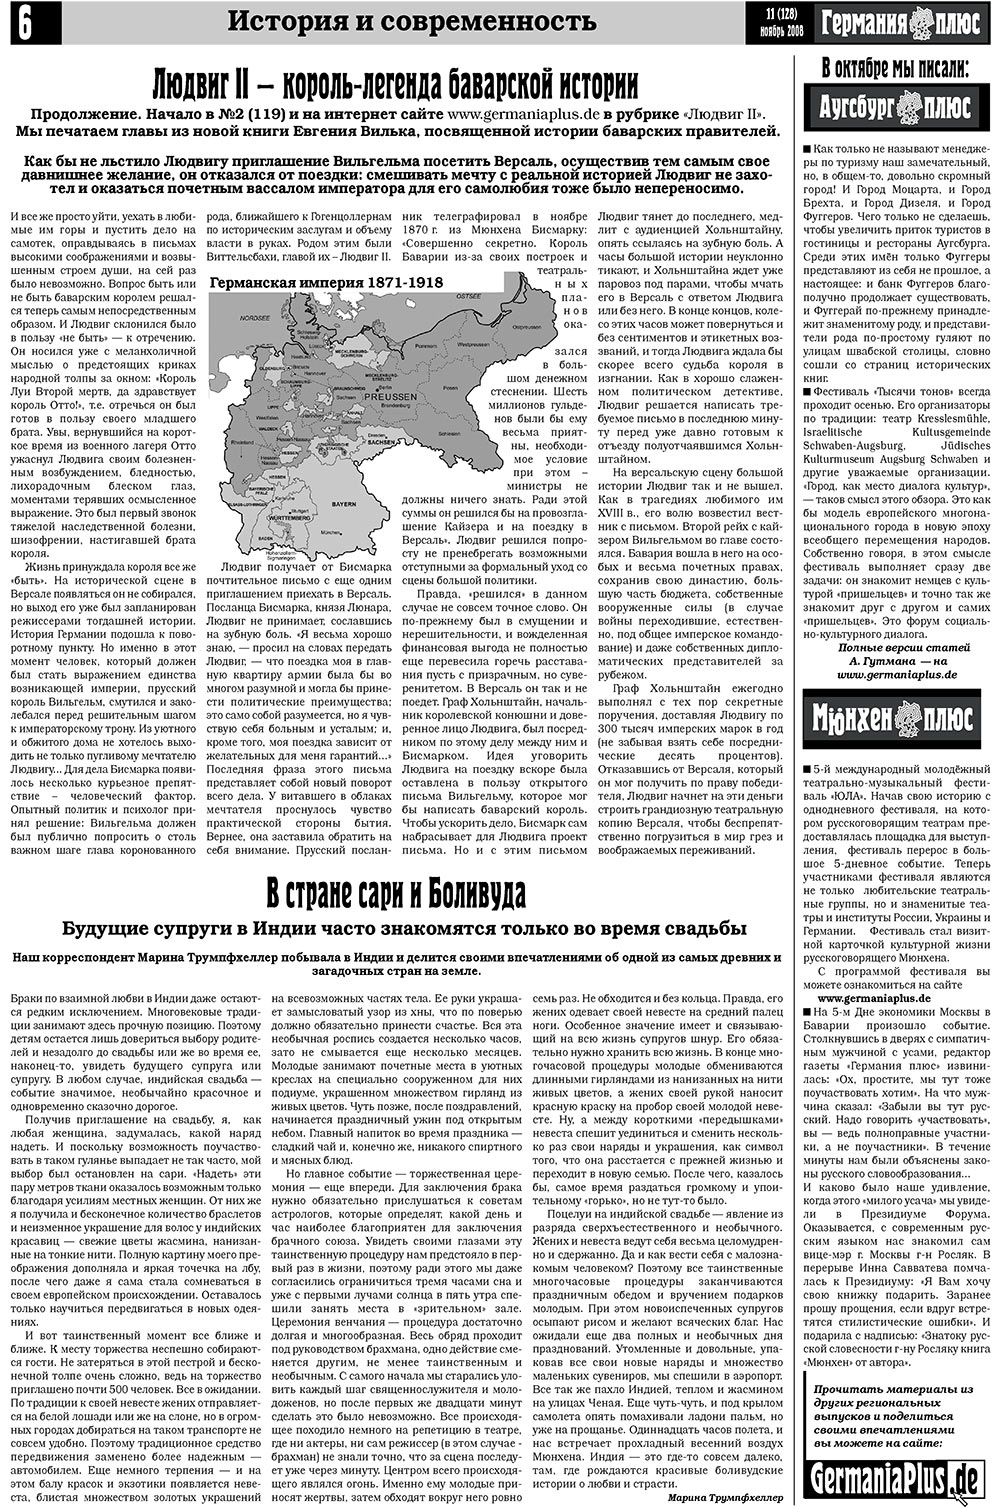 Германия плюс (газета). 2008 год, номер 11, стр. 6